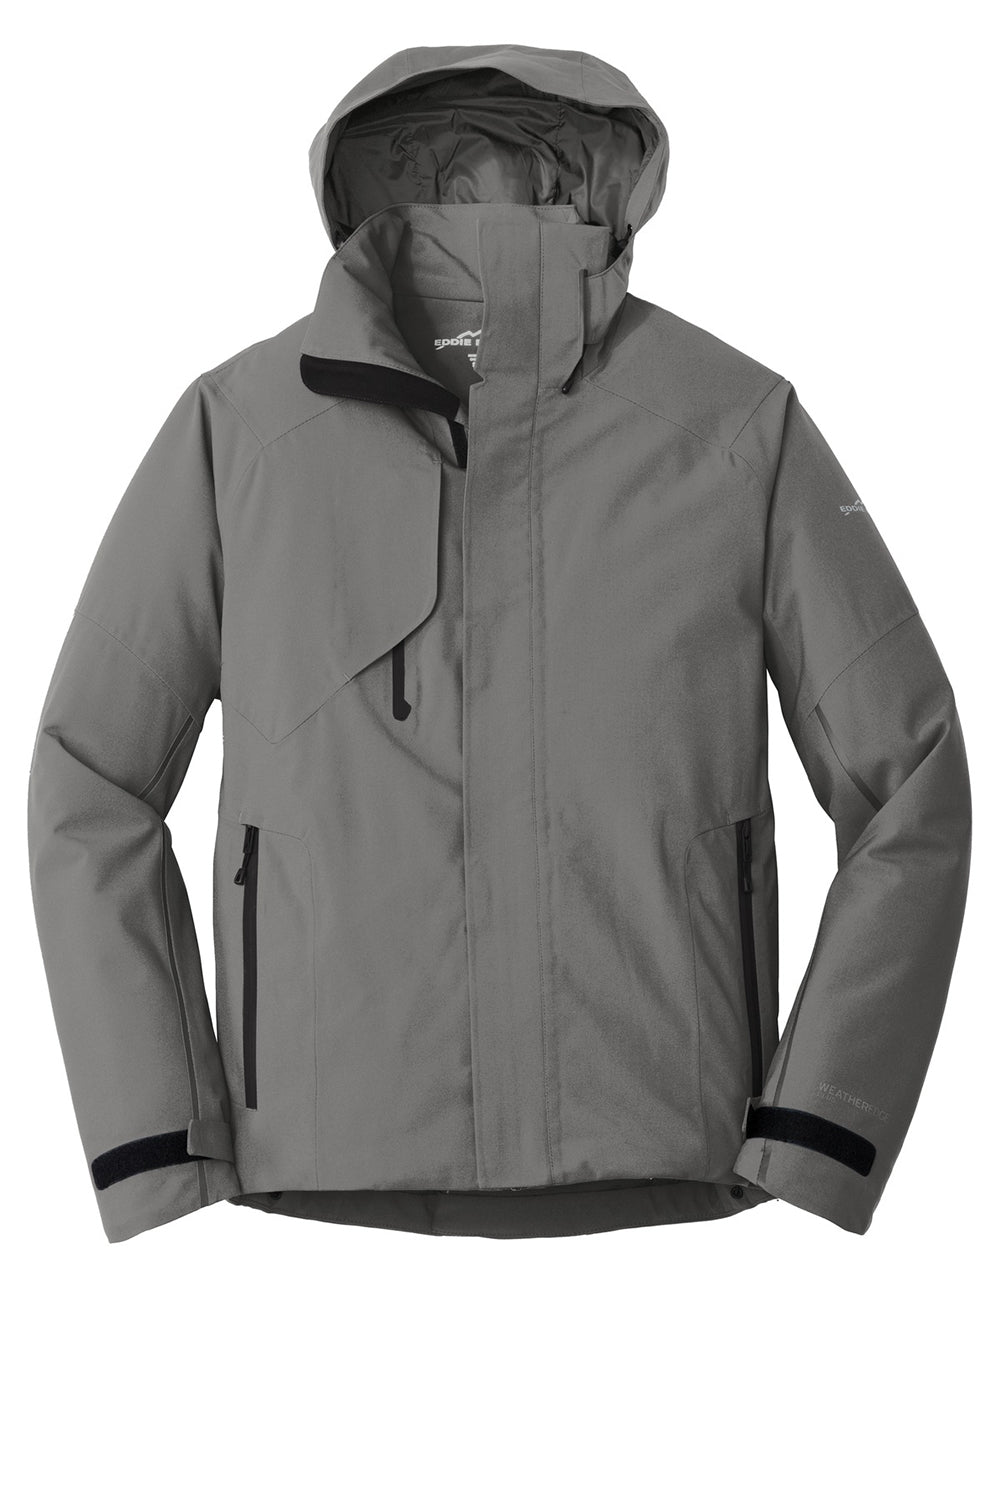 Eddie Bauer EB554 Mens WeatherEdge Plus Waterproof Full Zip Hooded Jacket Metal Grey Flat Front